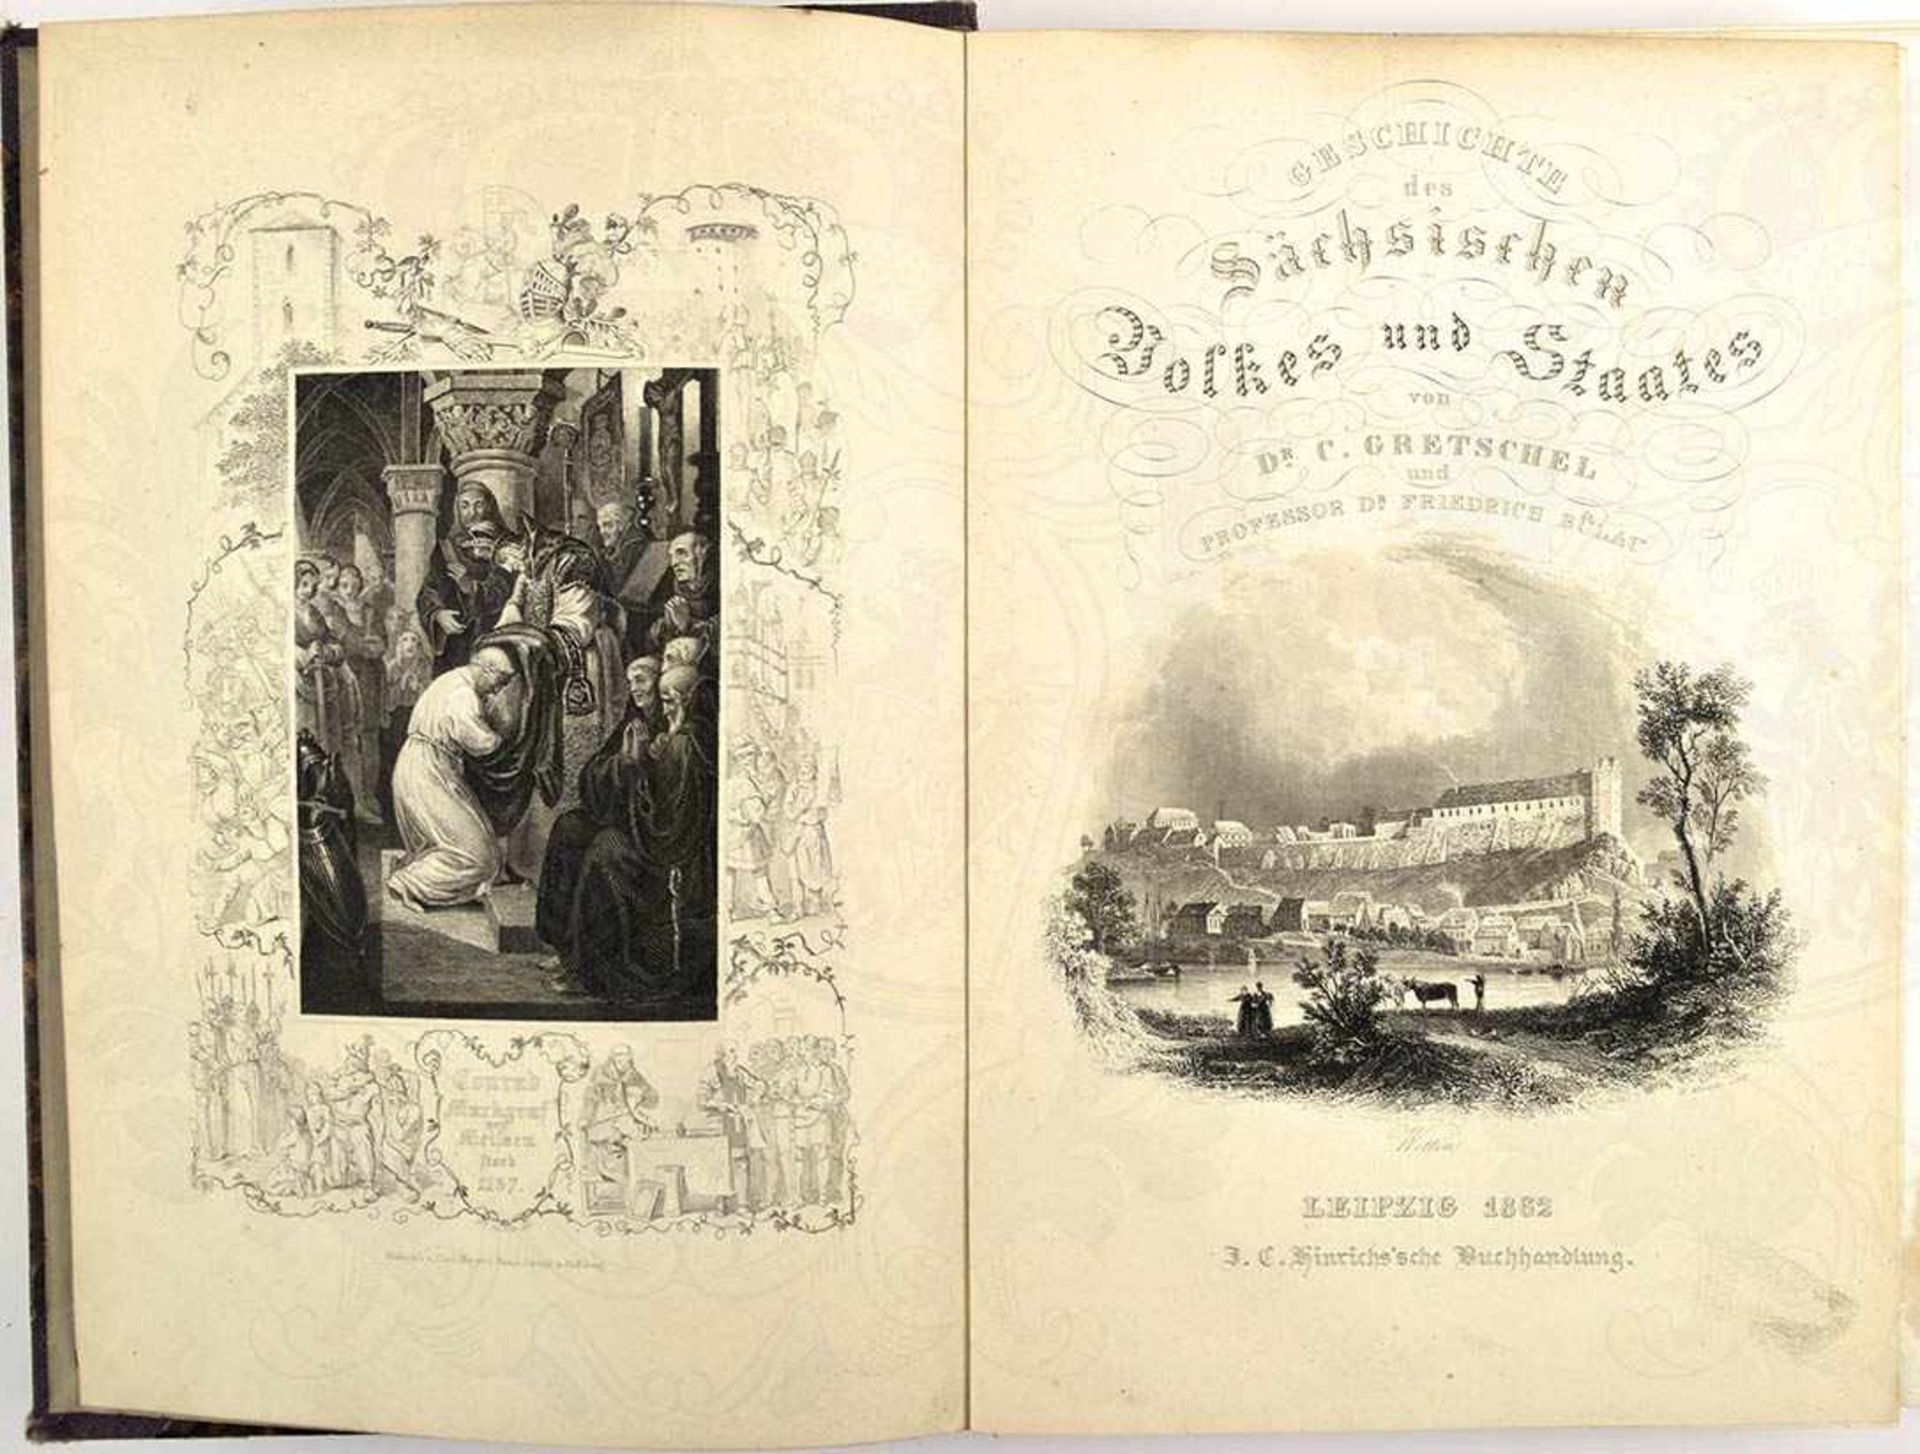 GESCHICHTE DES SÄCHSISCHEN VOLKES UND STAATES, Band 1 von 3, C. Gretschel, Leipzig 1862, 634 S.,